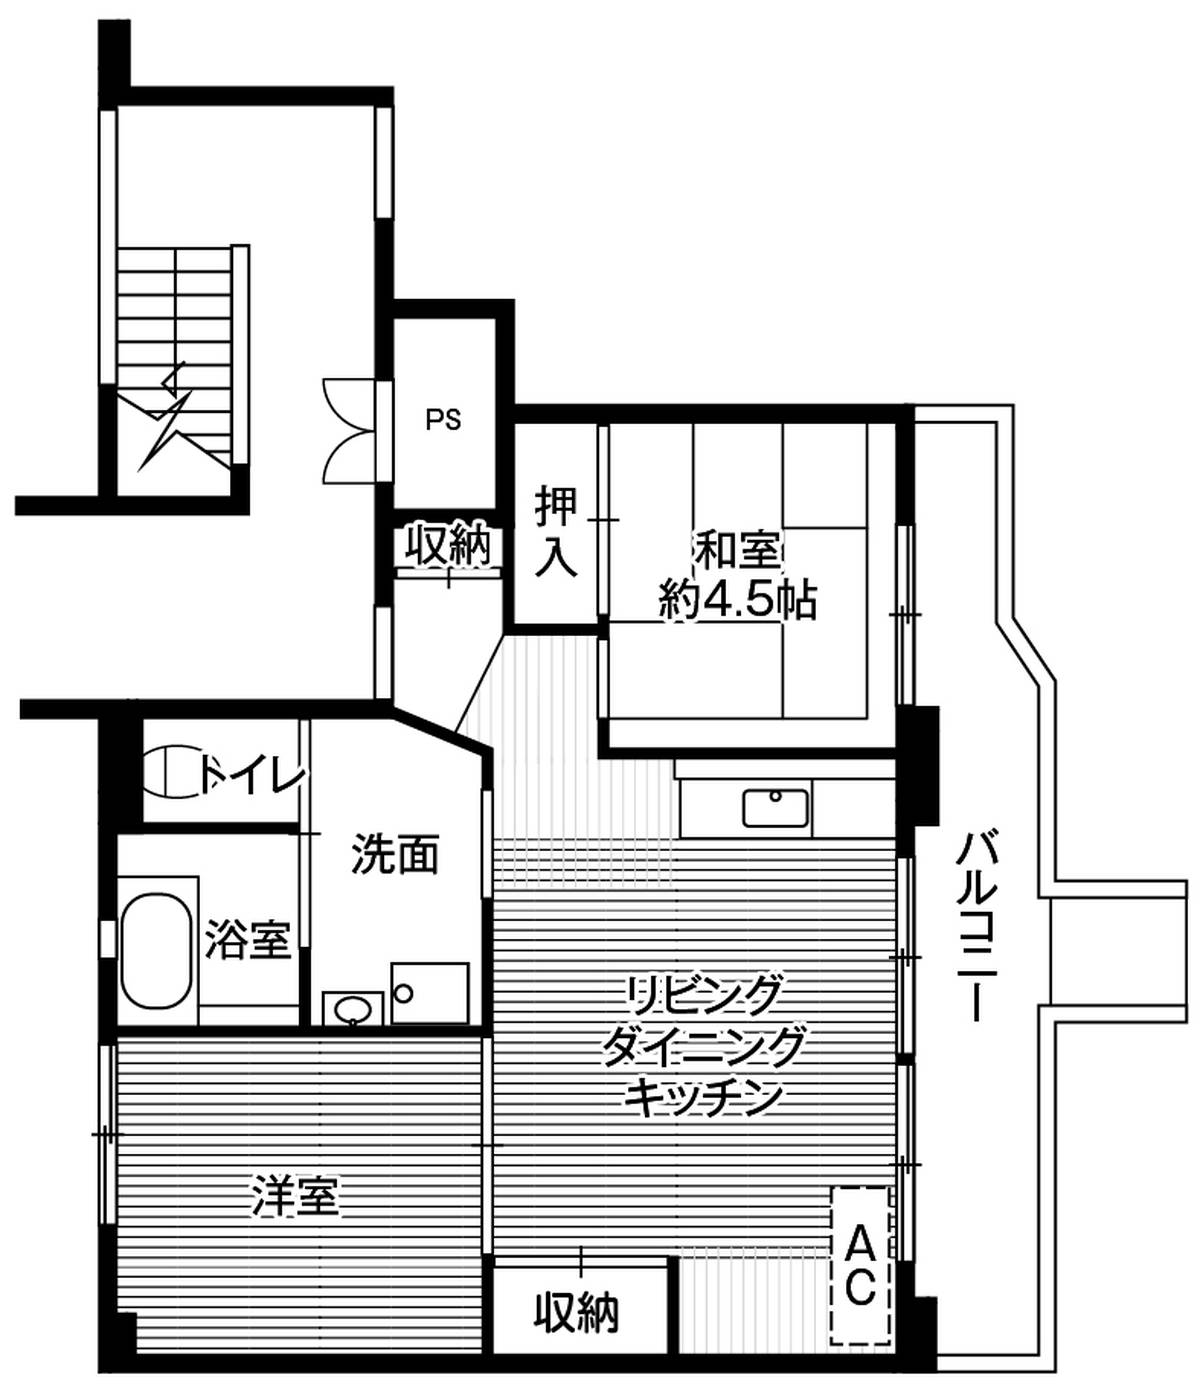 位于秋田市的Village House 若草的平面图2LDK